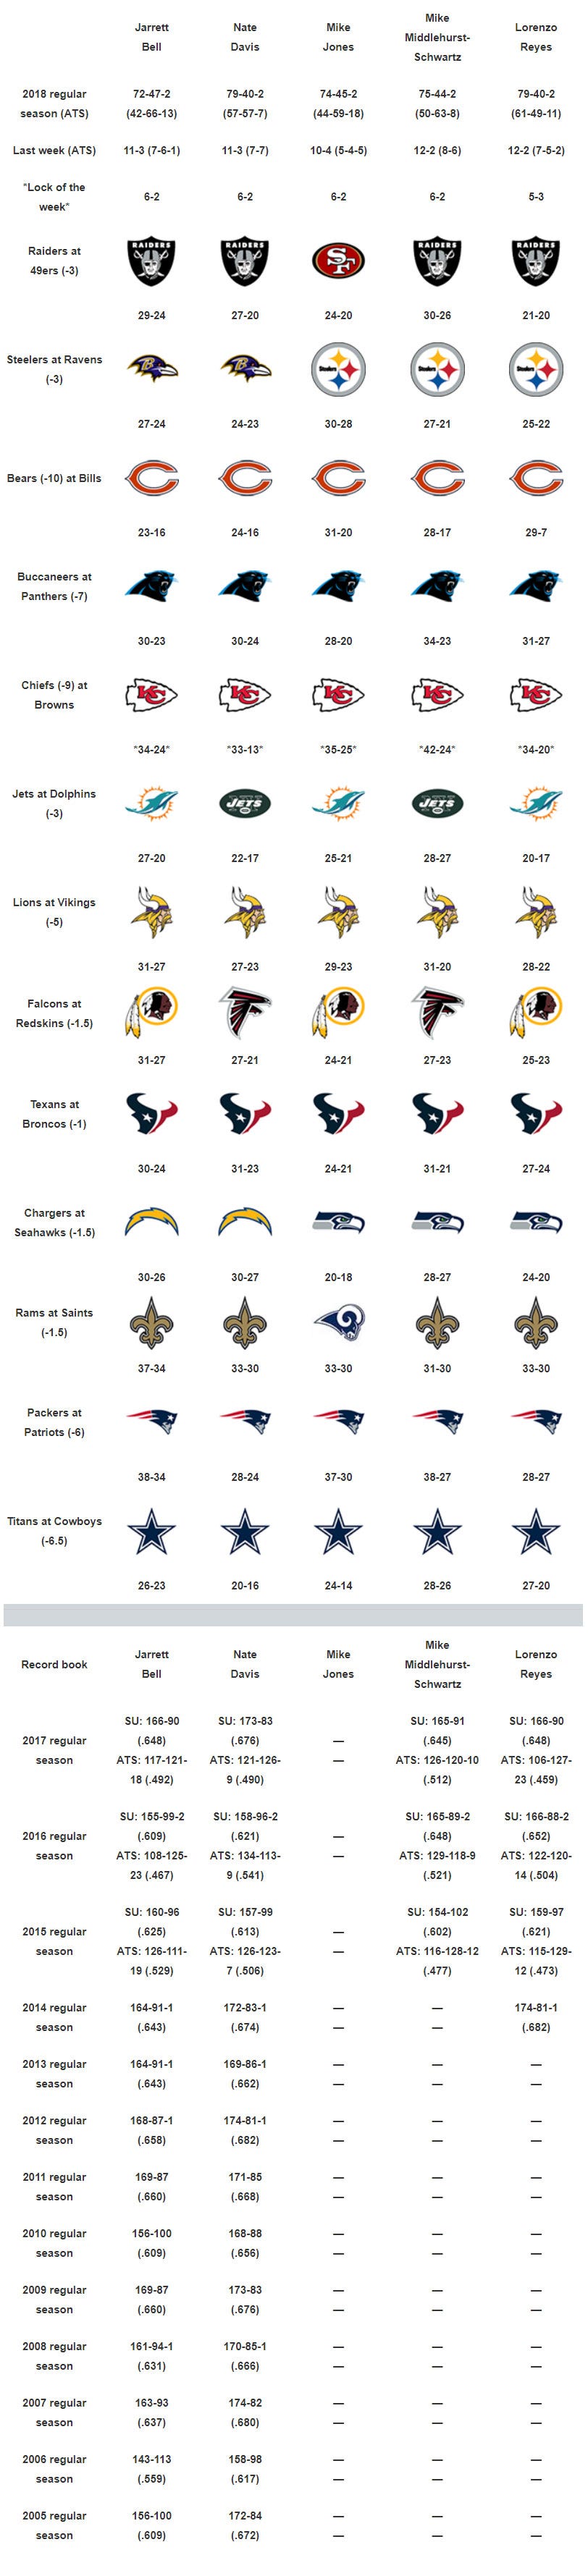 USA TODAY Week 9 NFL picks: Aaron Rodgers-Tom Brady, Rams-Saints oh my